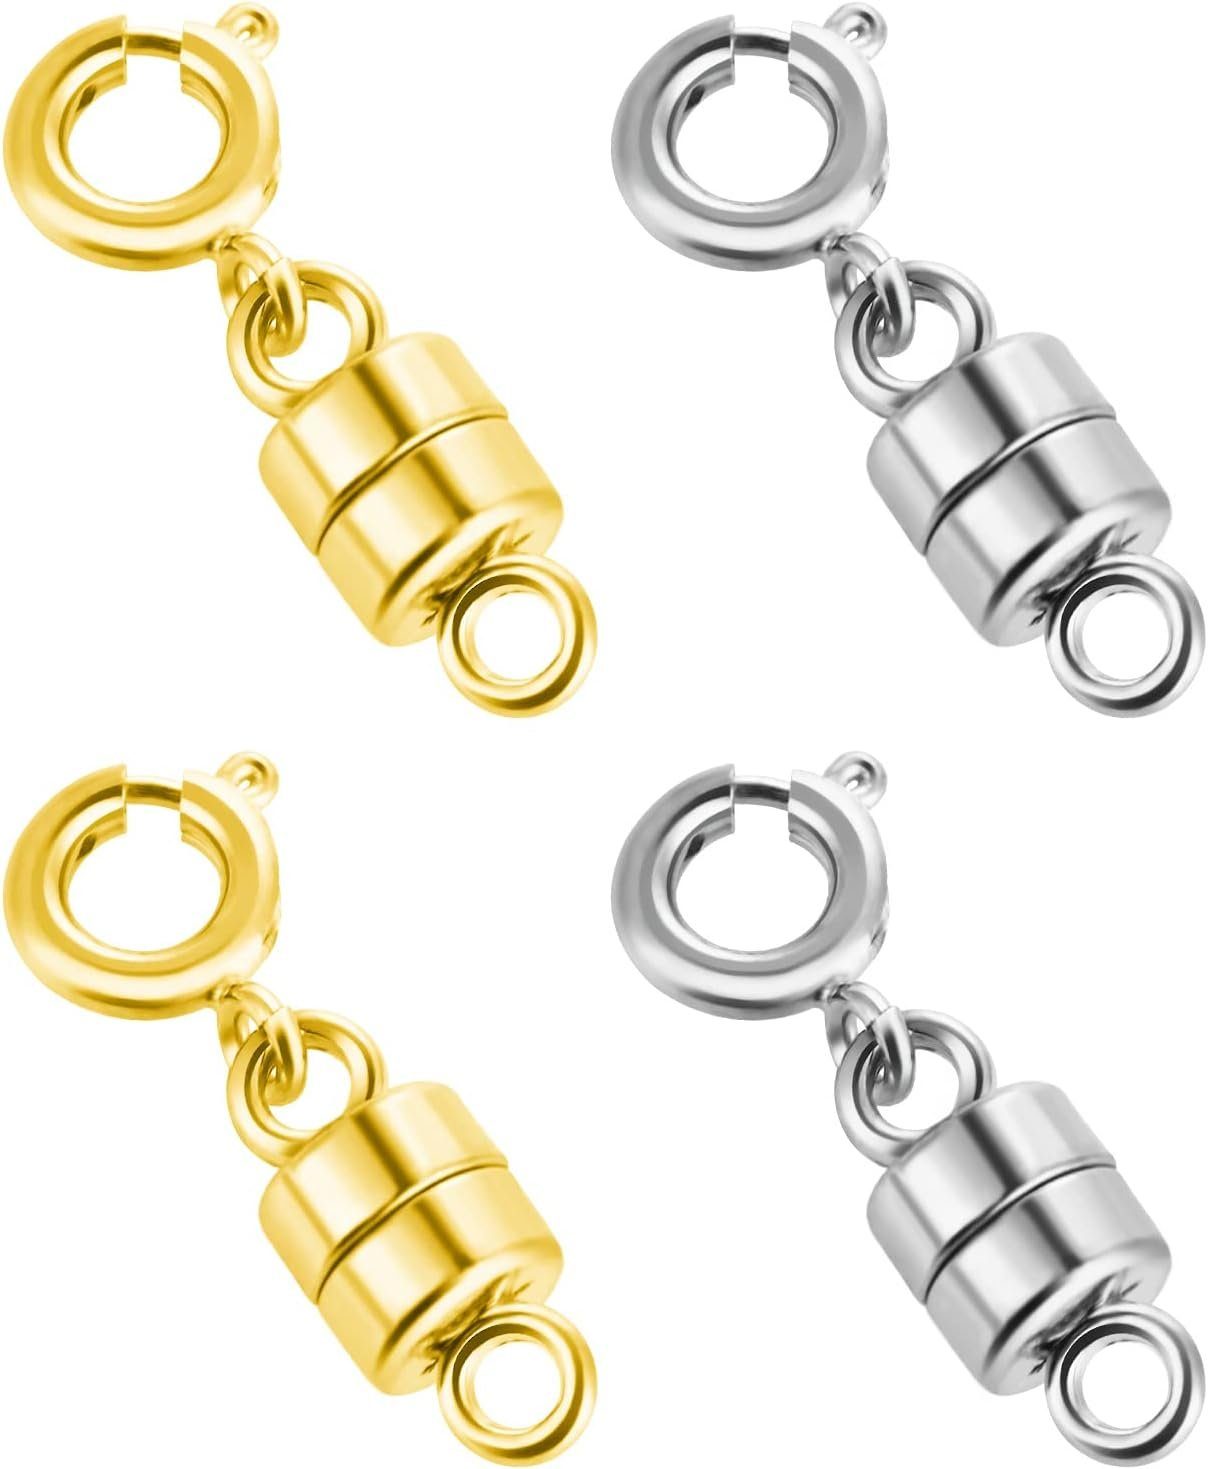 Haiaveng Magnetschließe 4 Stück Magnetverschluss Schmuck, Magnet Schmuck Kettenverschluss (set, 4-tlg), für Armband Halskette Schmuck Machen (Gold und Silber)